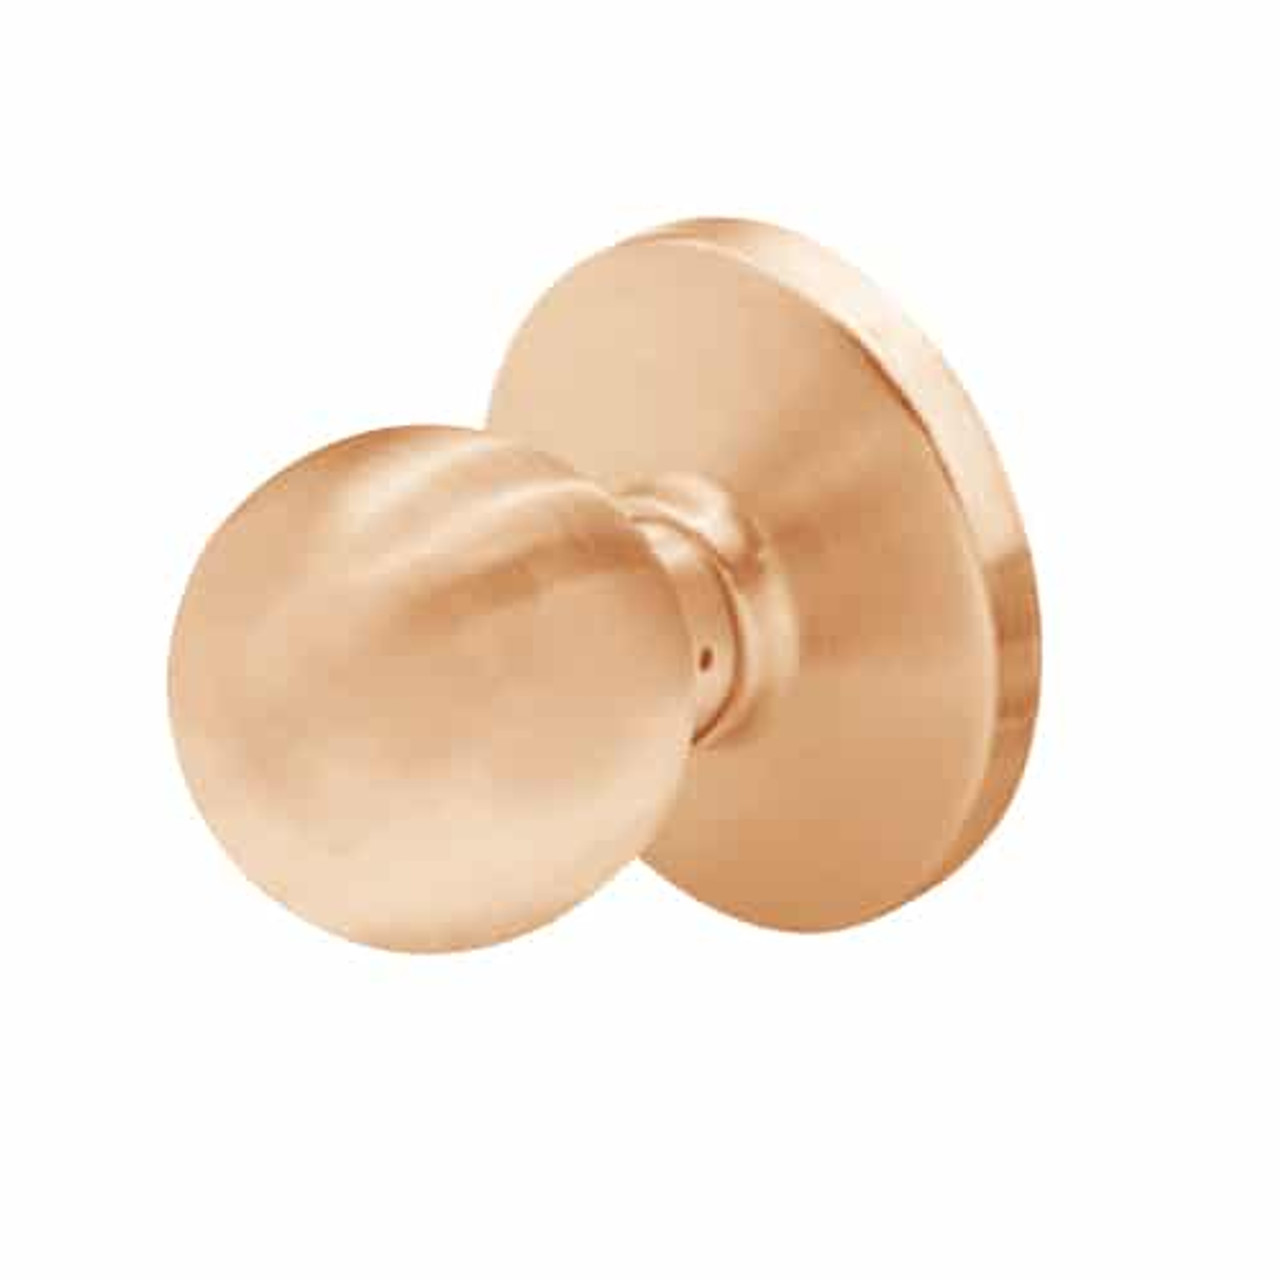 6K20N4DSTK611 Best 6K Series Passage Medium Duty Cylindrical Knob Locks with Round Style in Bright Bronze